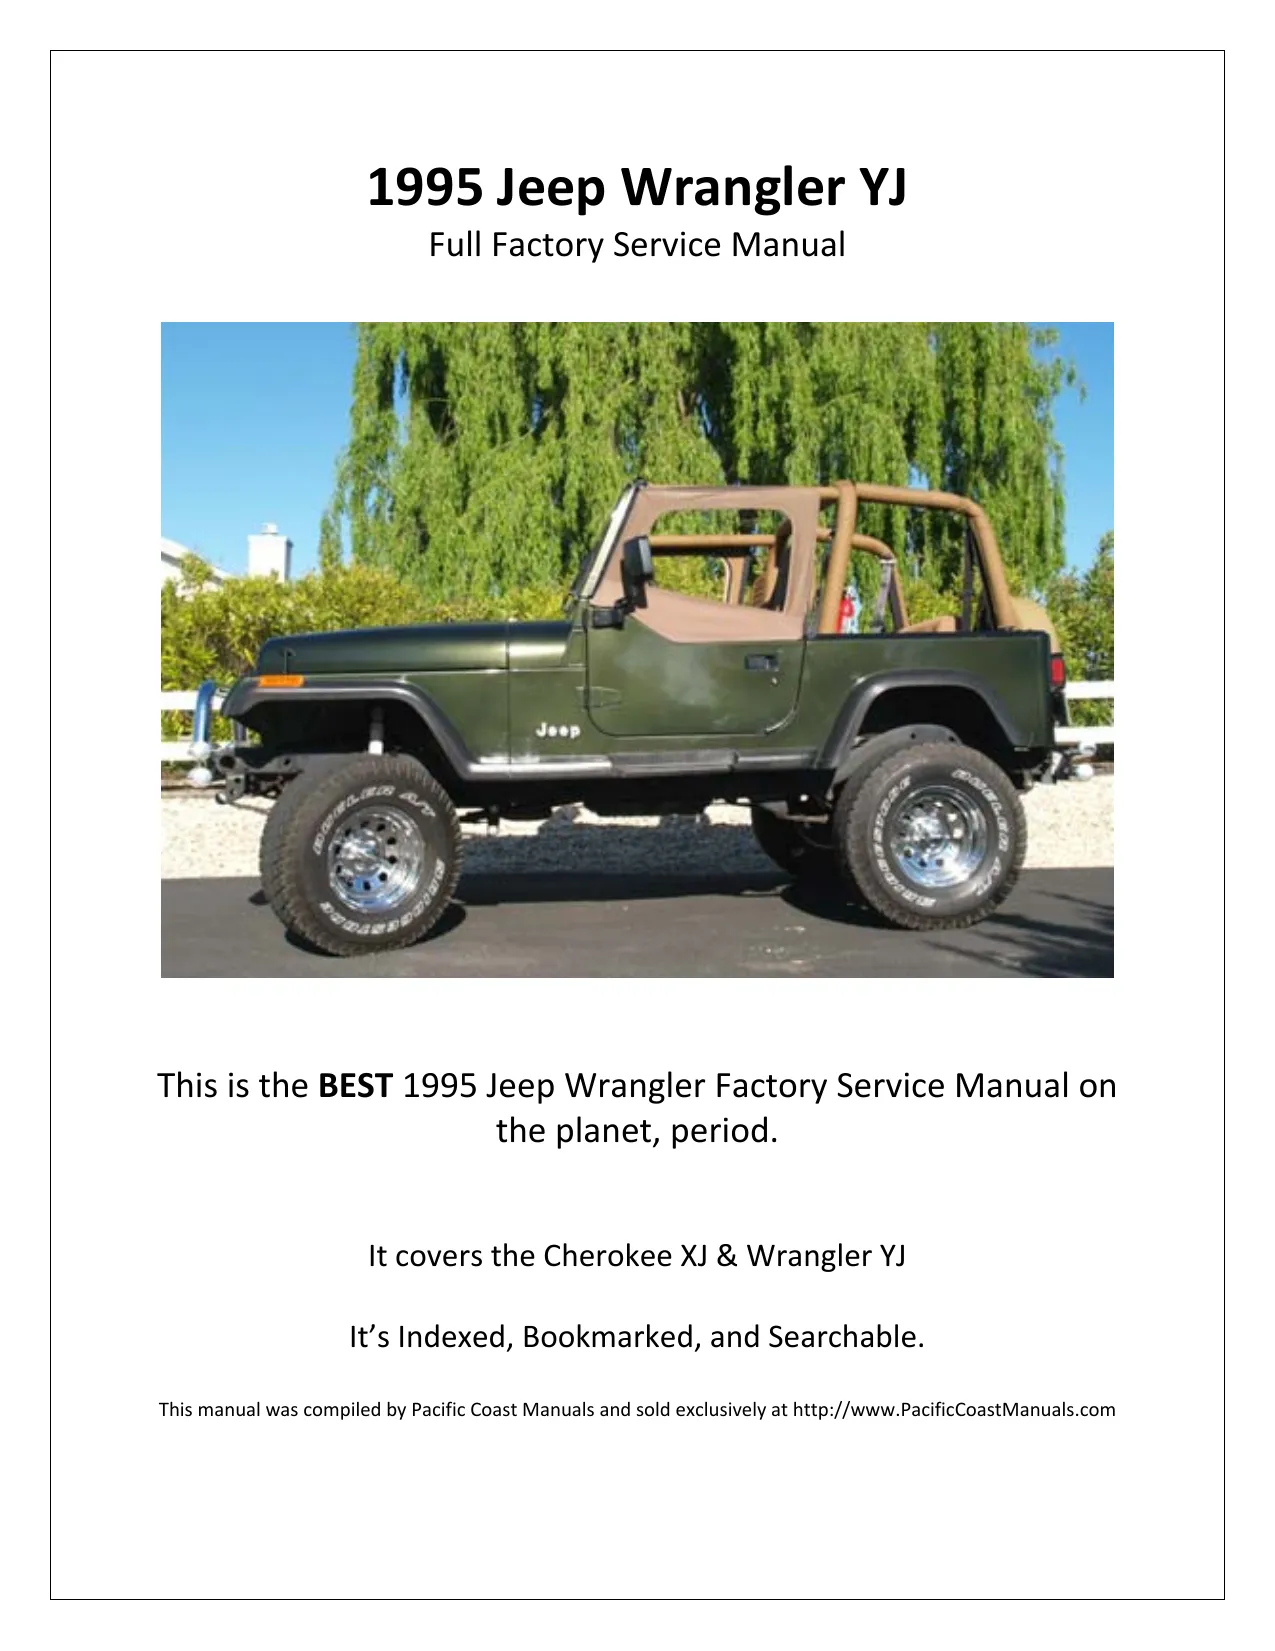 1995 Jeep Wrangler YJ repair manual Preview image 1